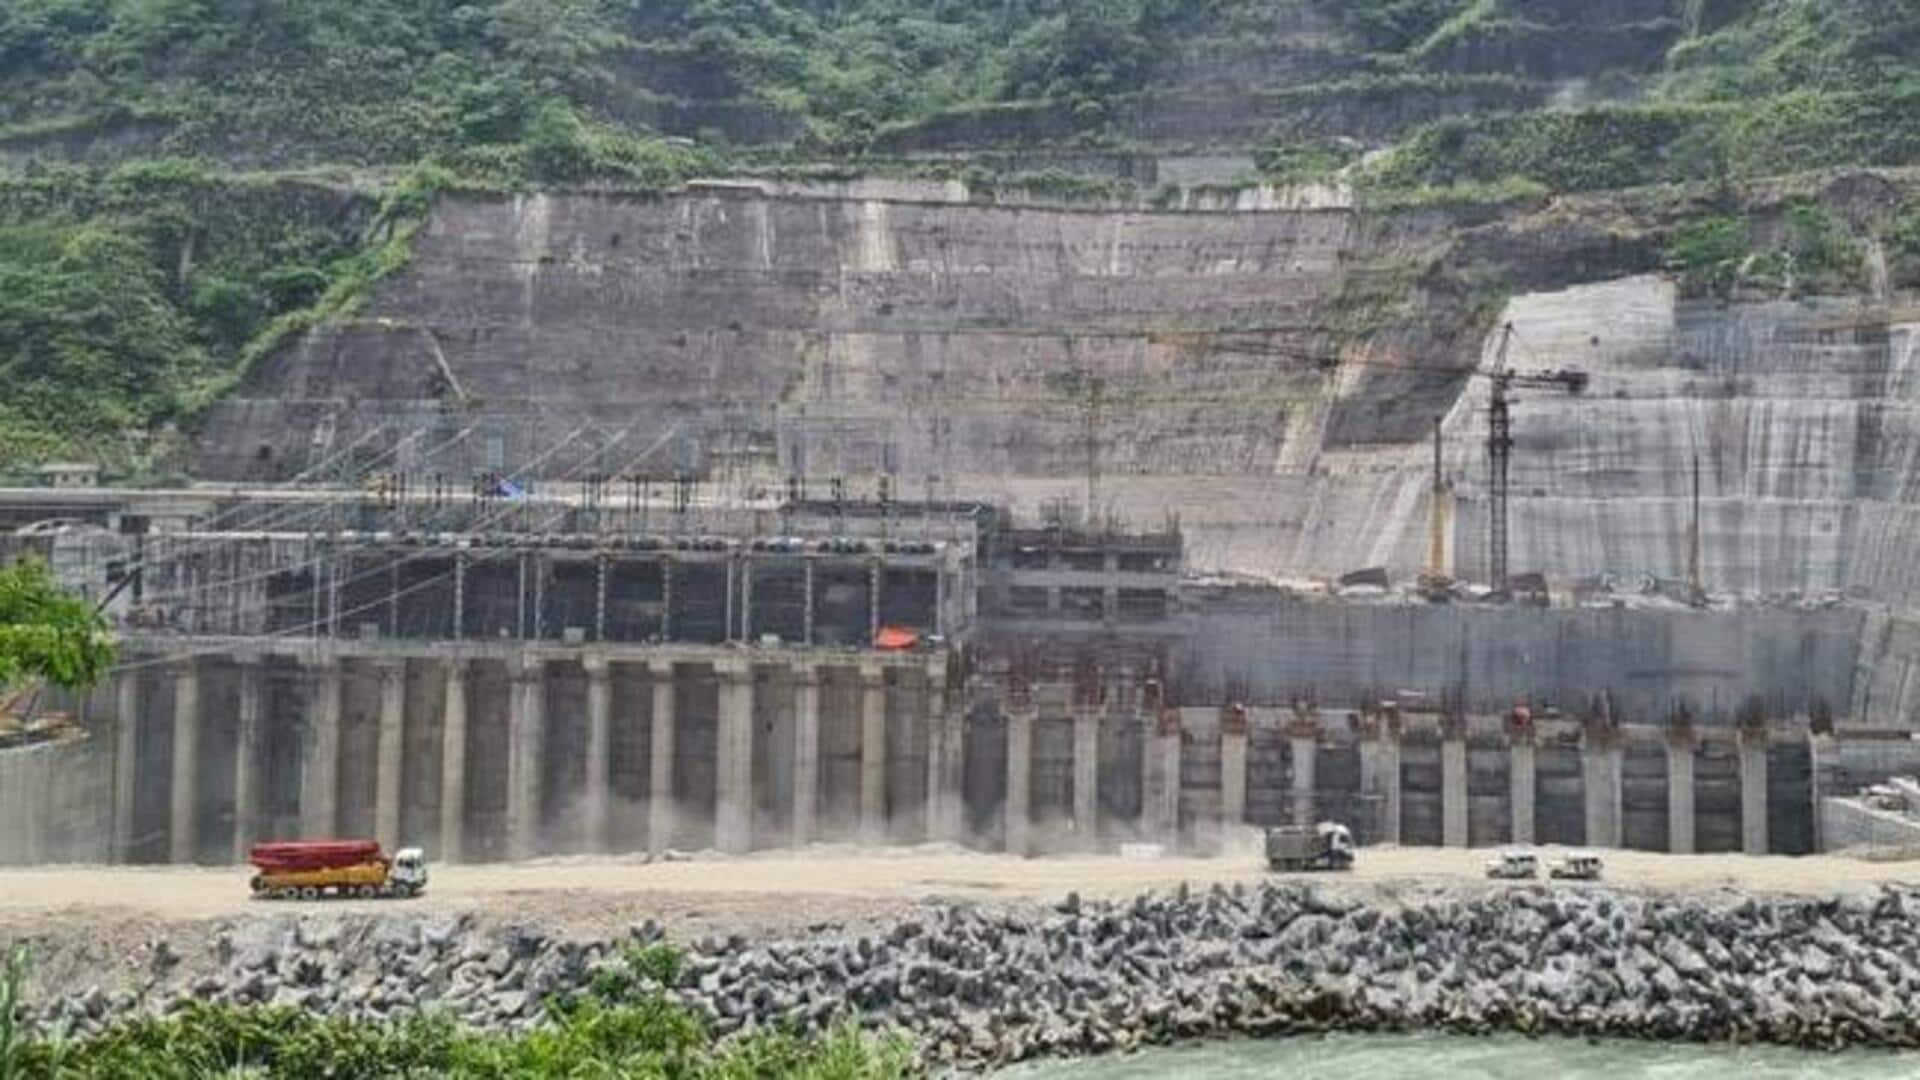 चीन की सीमा के पास भारत की जलविद्युत परियोजना जल्द होगी शुरू, जानें अहम बातें